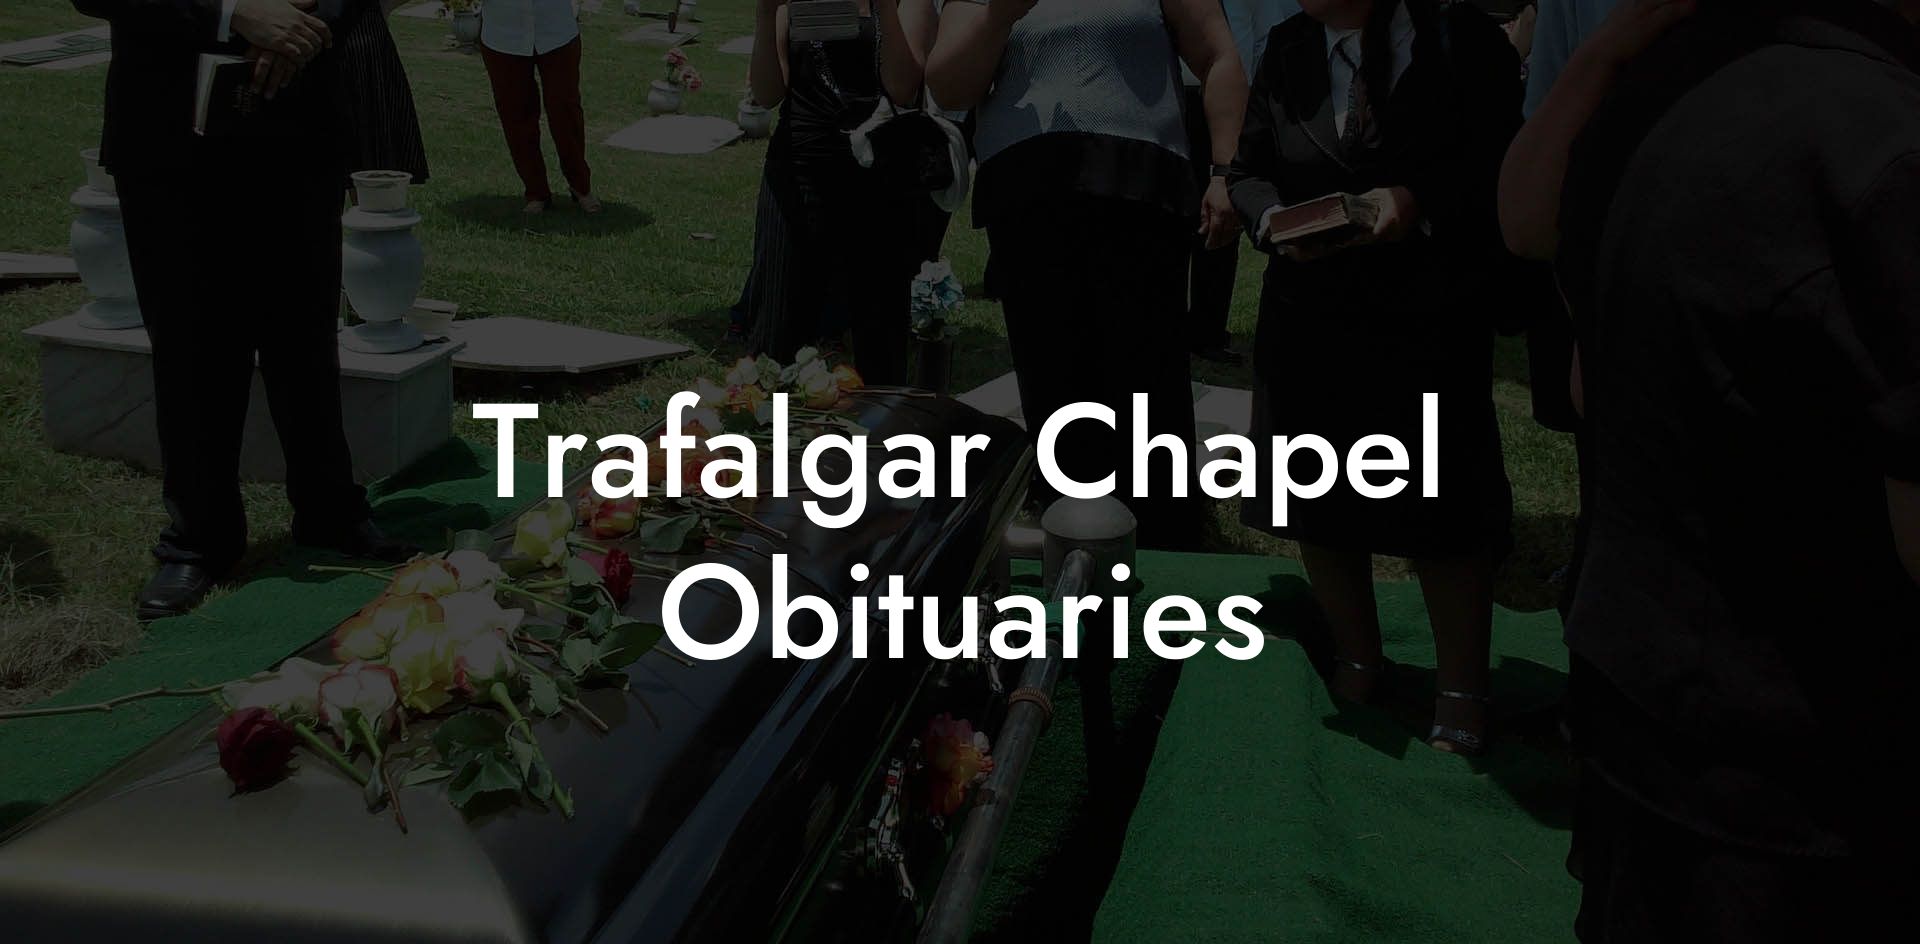 Trafalgar Chapel Obituaries